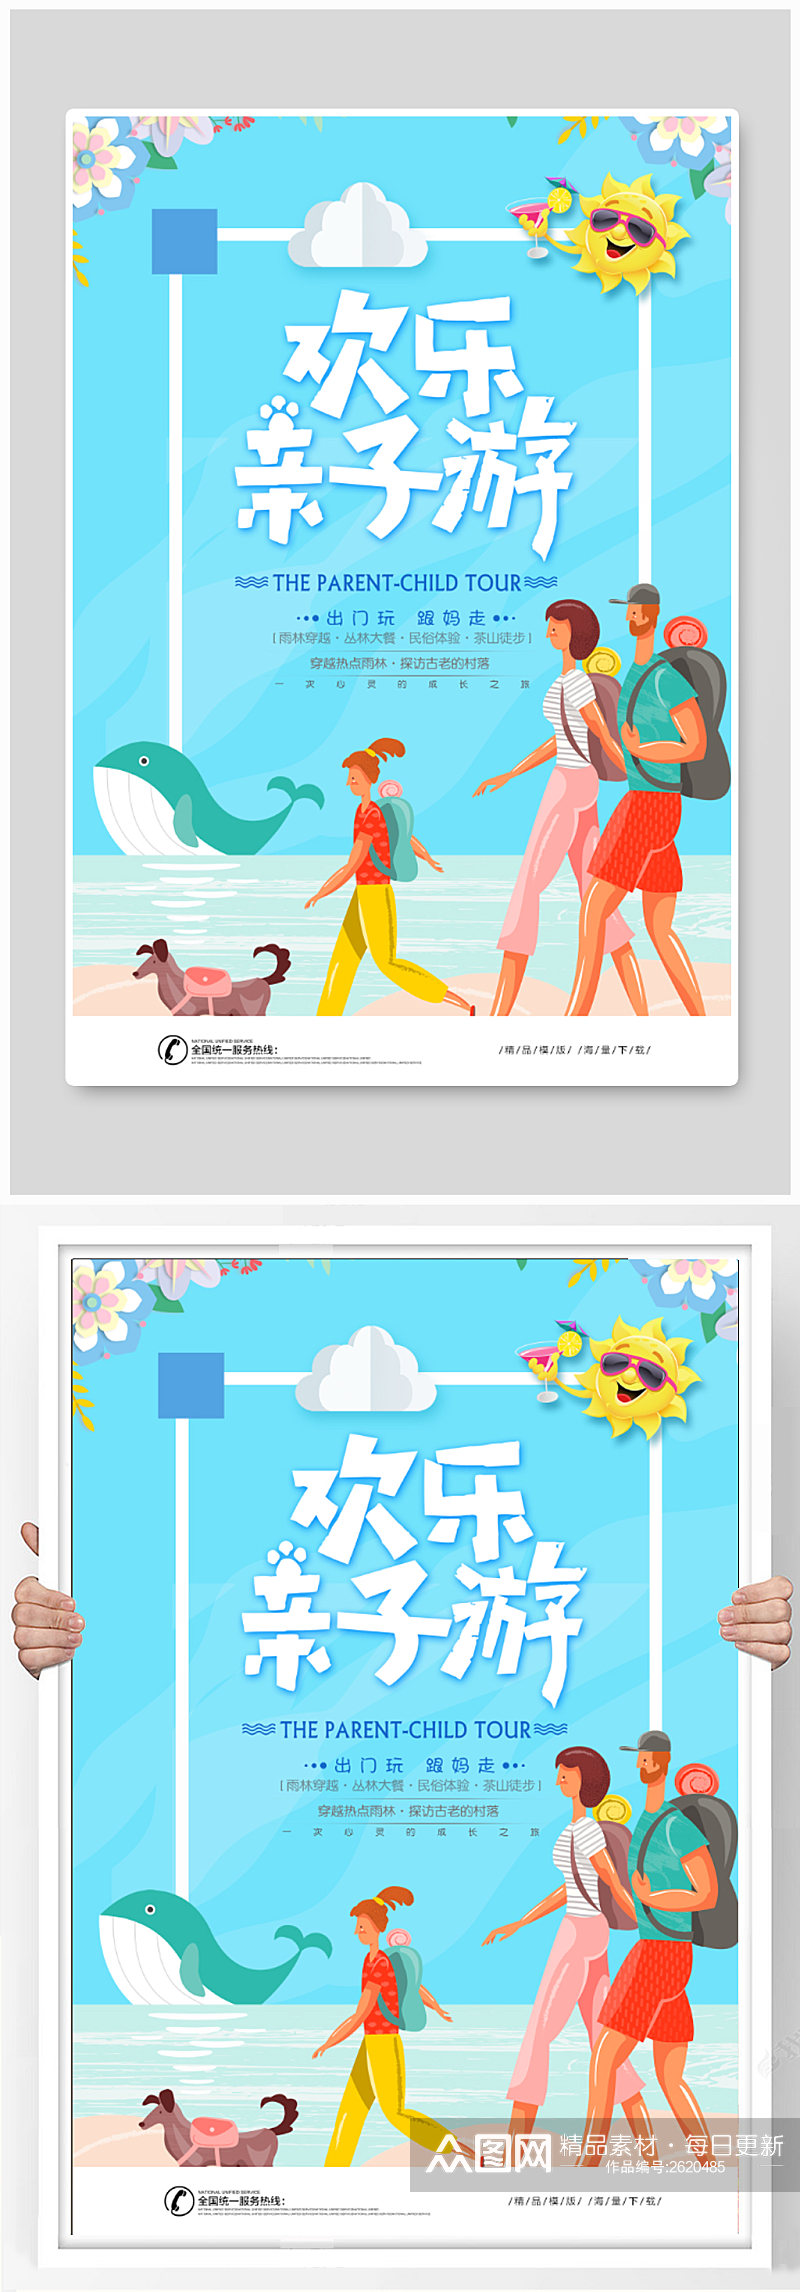 欢乐亲子游旅游宣传 活动 海报素材